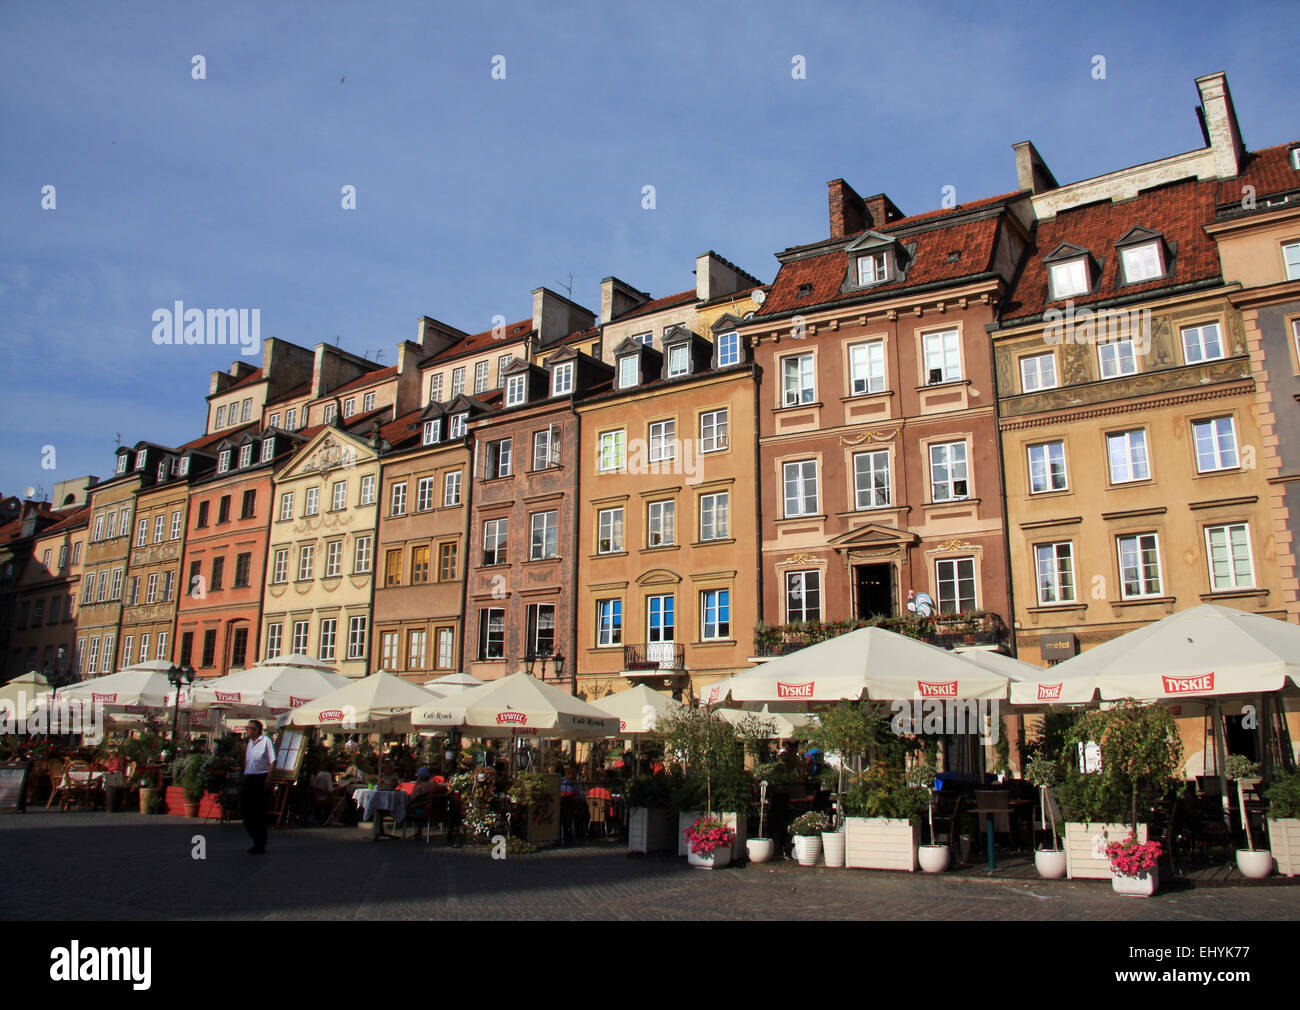 Polen, Warschau, Europa, Altstadt, Unesco, Weltkulturerbe, Marktplatz Rynek Ehren Miasta, Häuser, Wohnungen, Fassaden Stockfoto